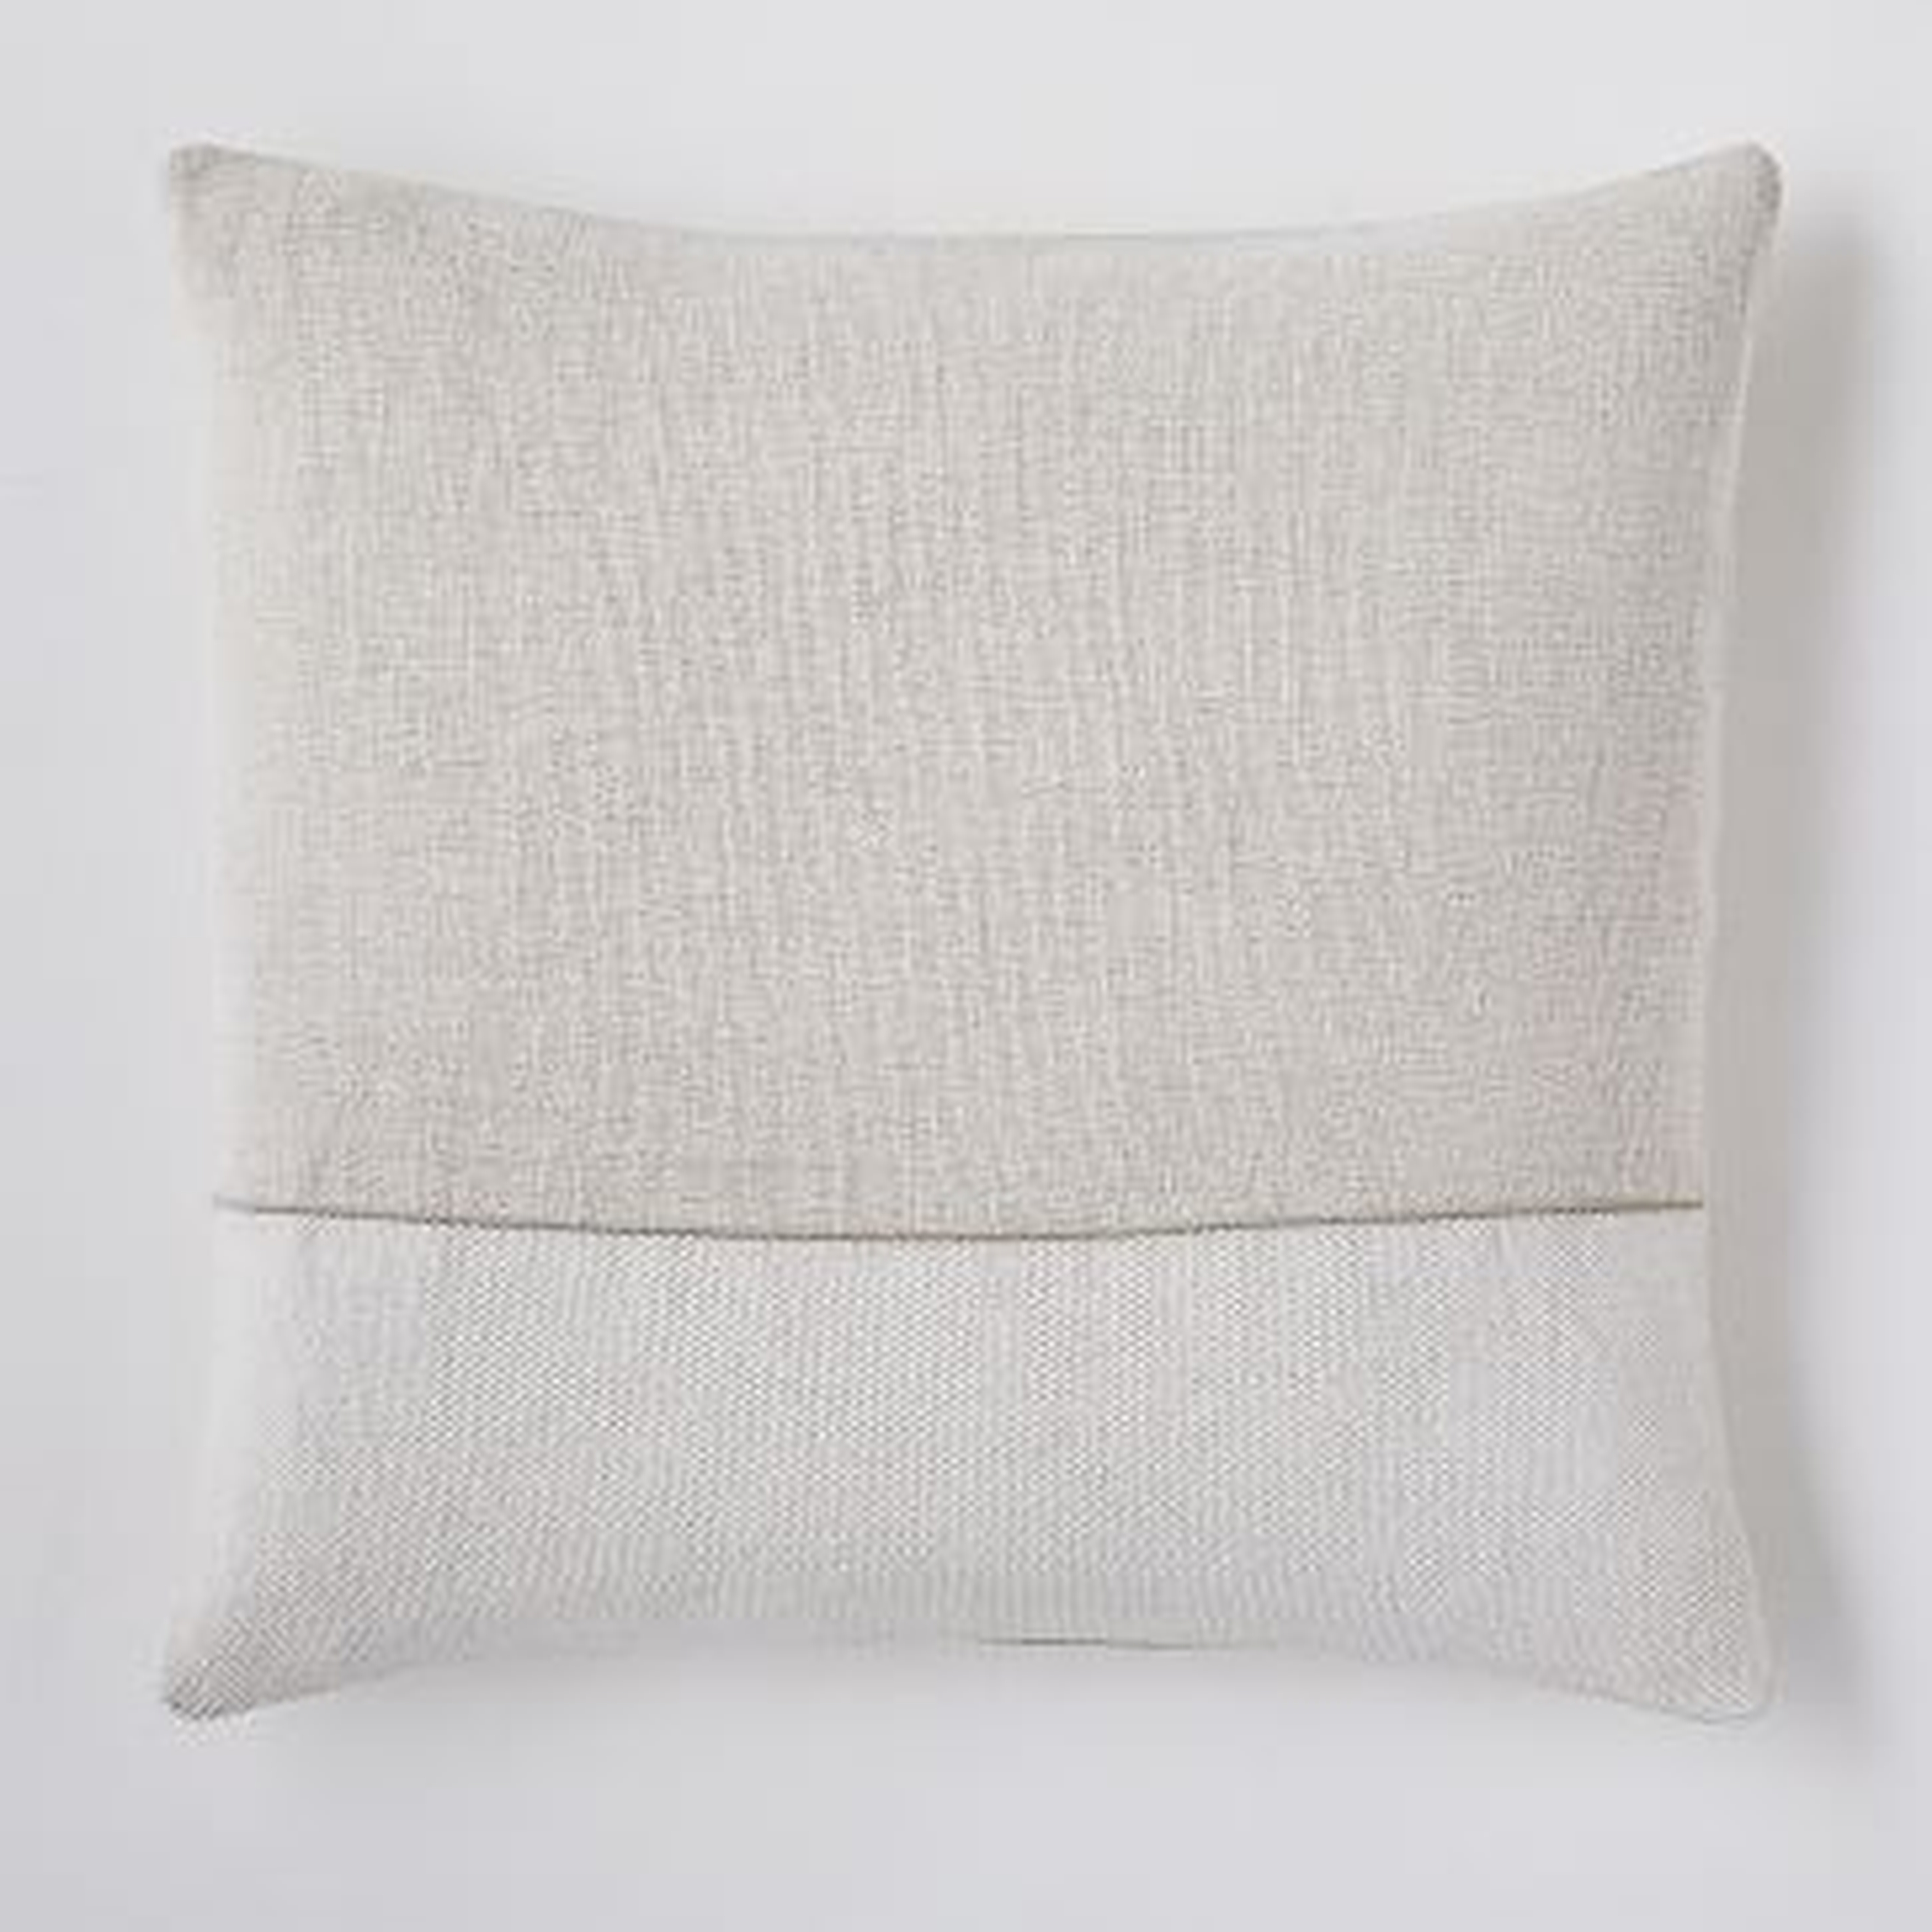 Cotton Canvas Pillow Cover, 18"x18", White, Set of 2 - West Elm